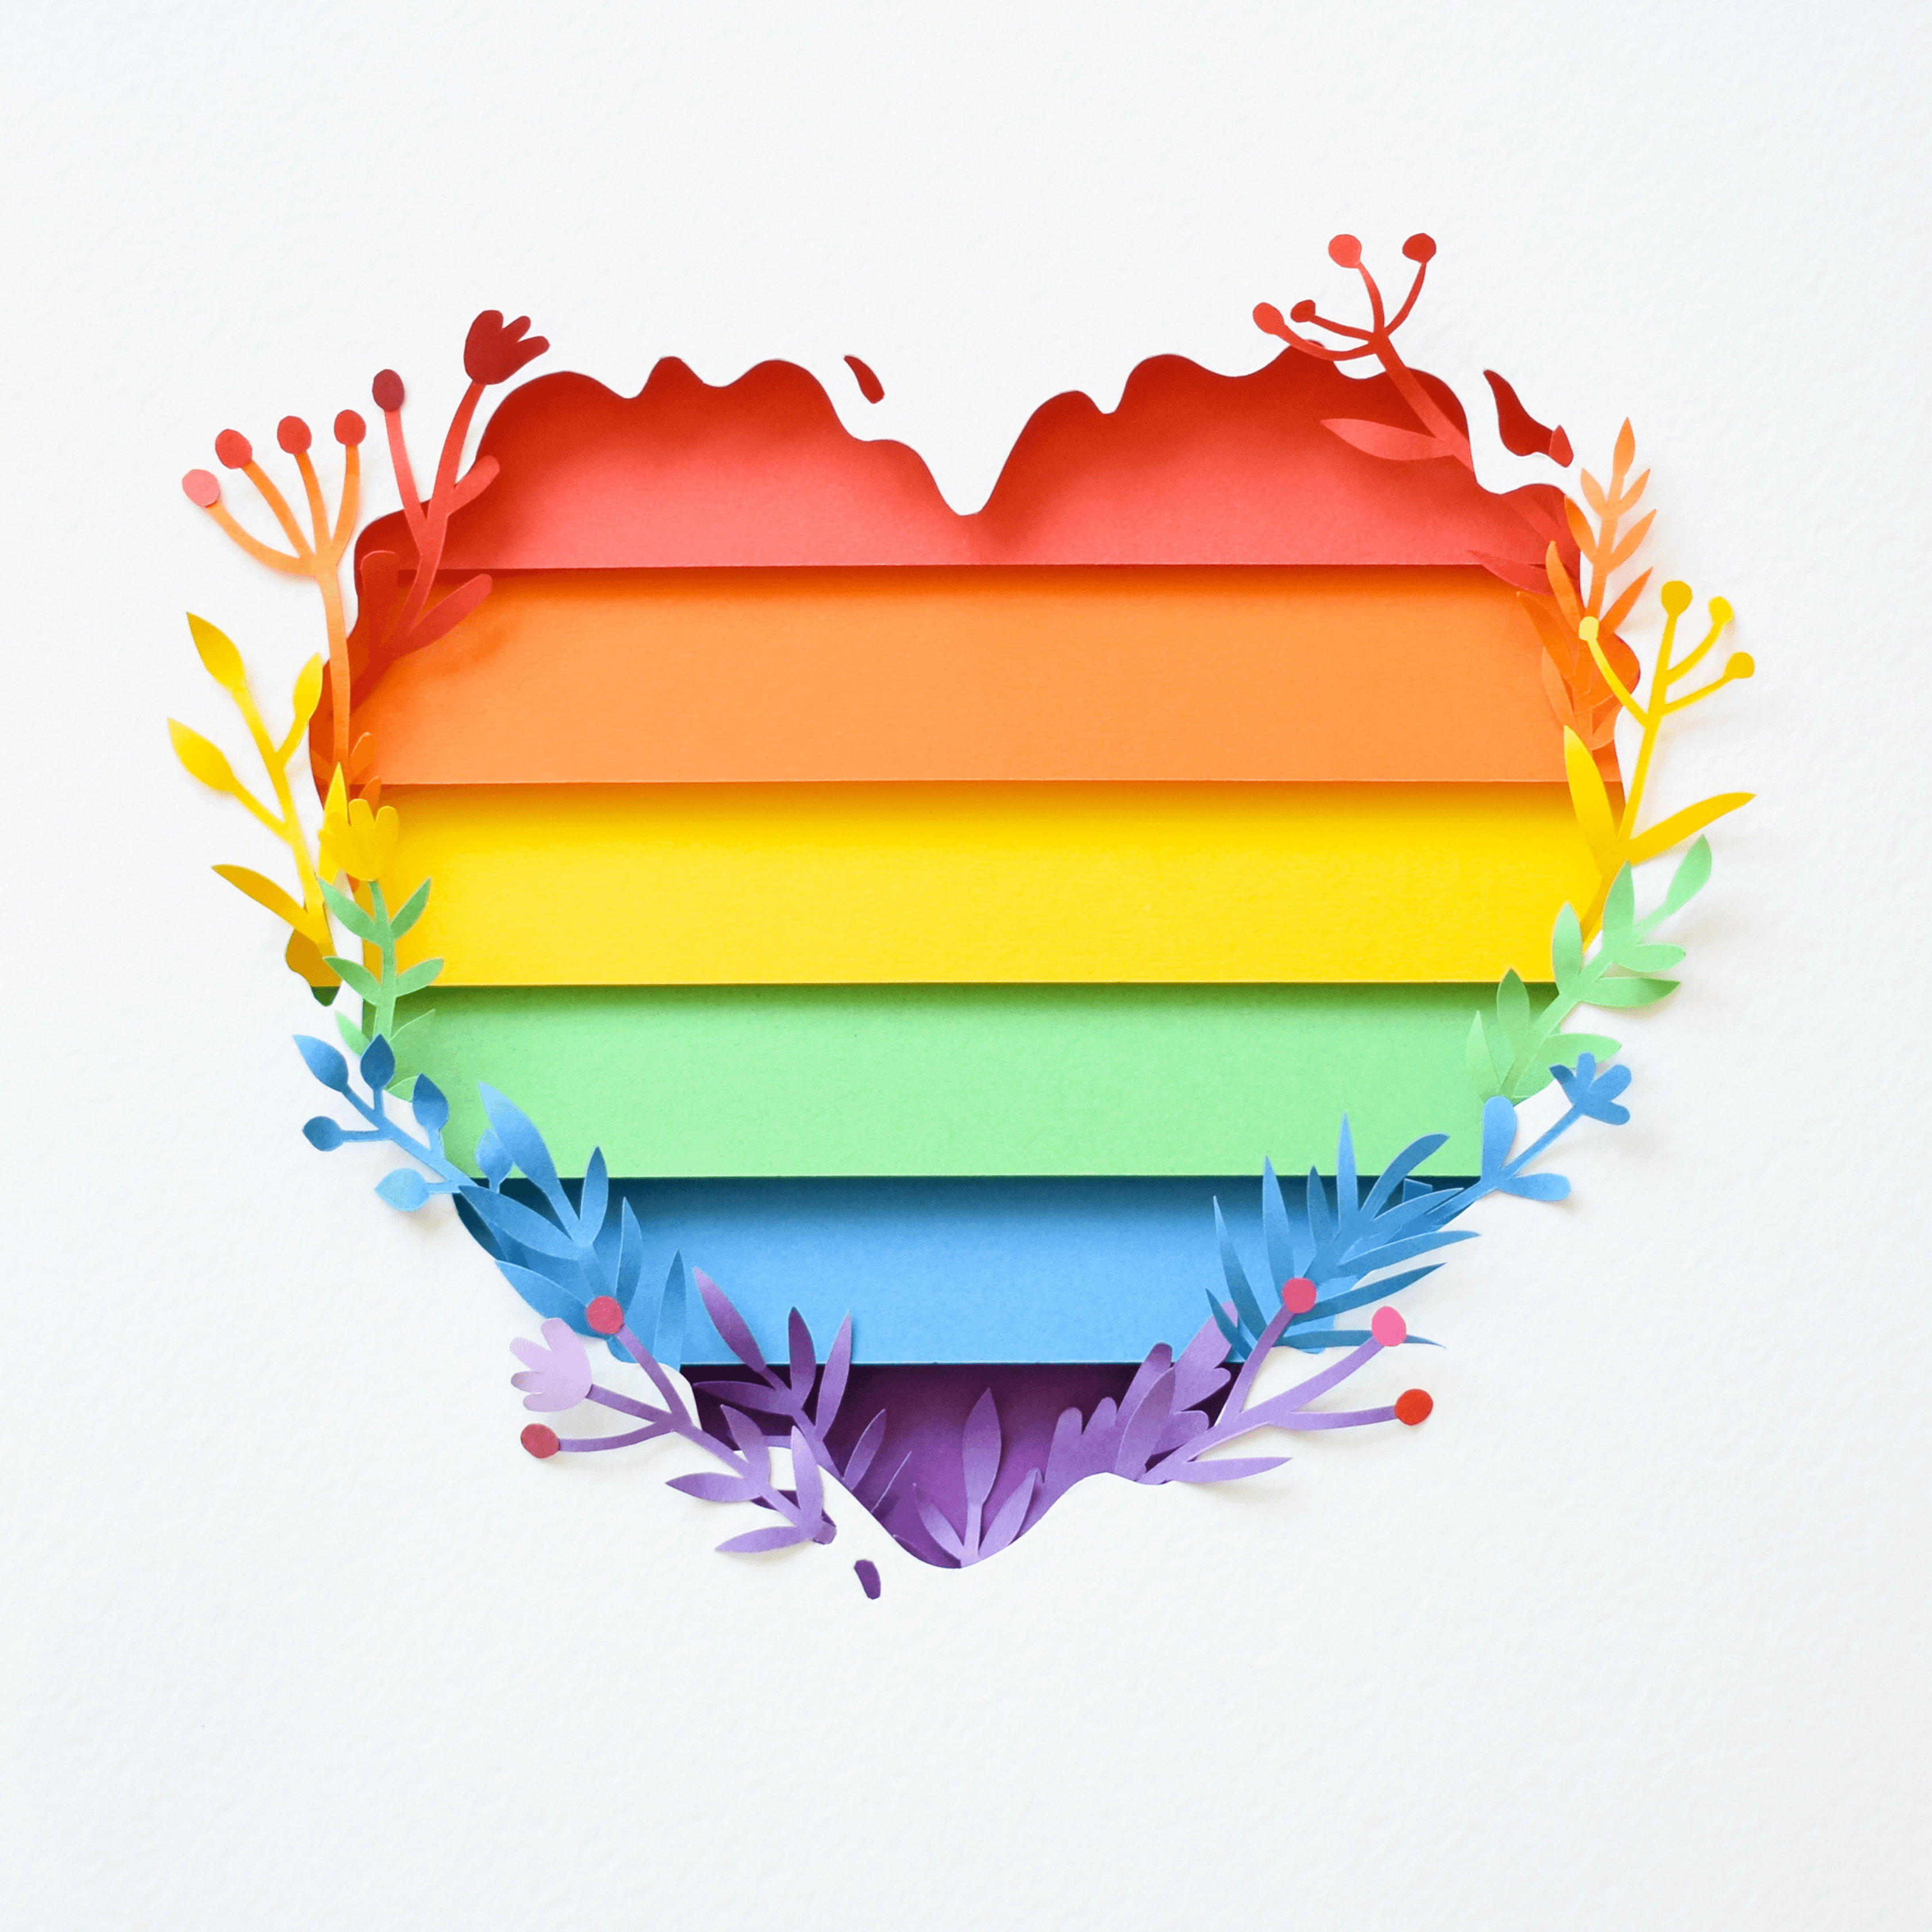 LGBTQ+ Heart